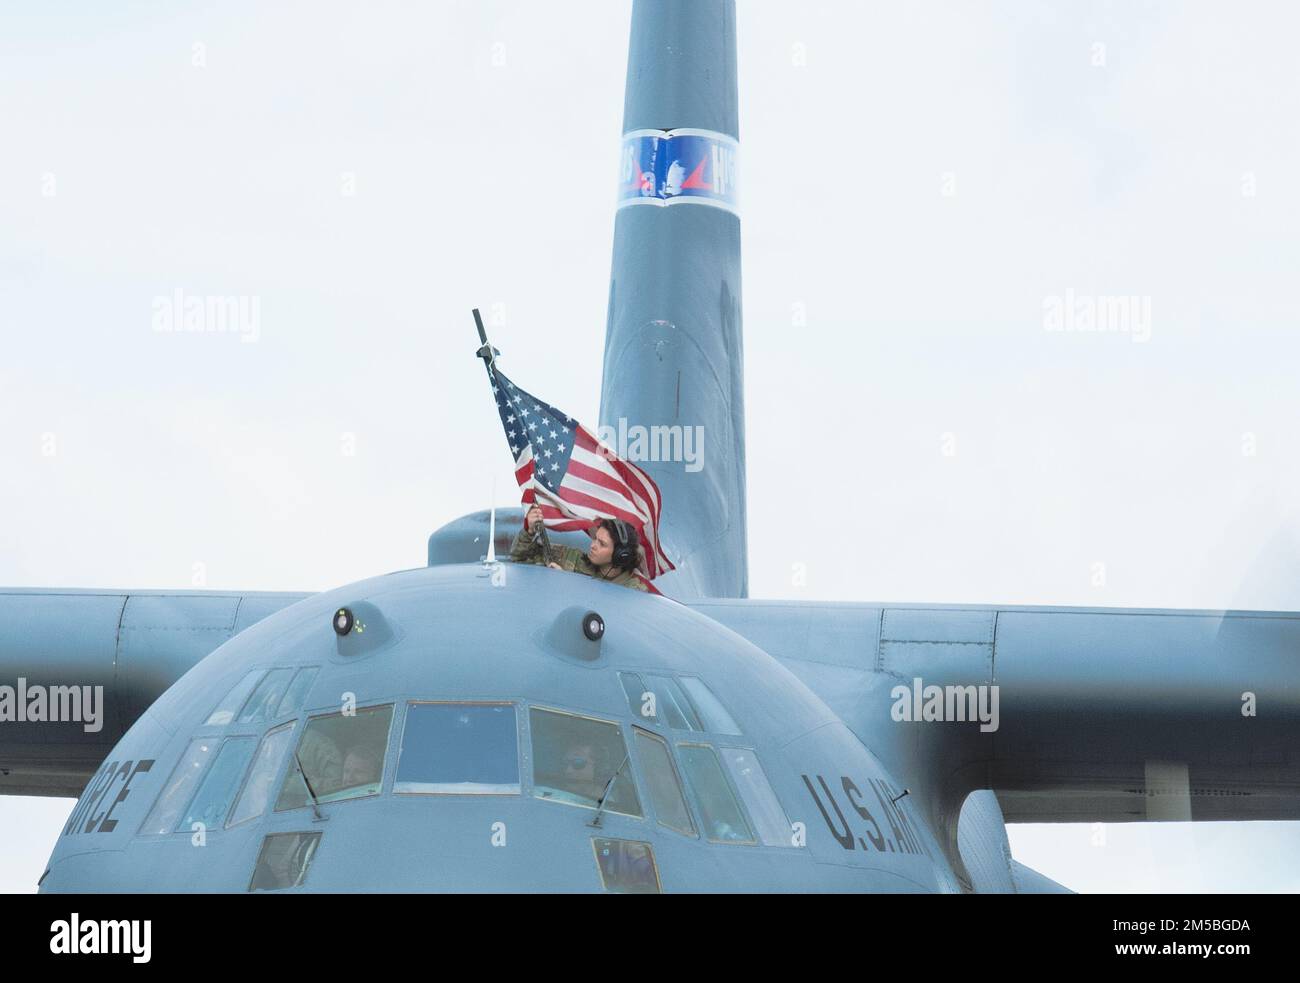 Les membres de la 152nd Airlift Wing, de la Garde nationale de l'air du Nevada, rentrent chez eux après avoir passé près de trois mois et de nombreuses vacances déployées aux États-Unis Zone de responsabilité du commandement de l'Afrique. Les aviateurs ont fourni des services de transport aérien de théâtre et de livraison aérienne à l'aide d'avions C-130 Hercules. Banque D'Images